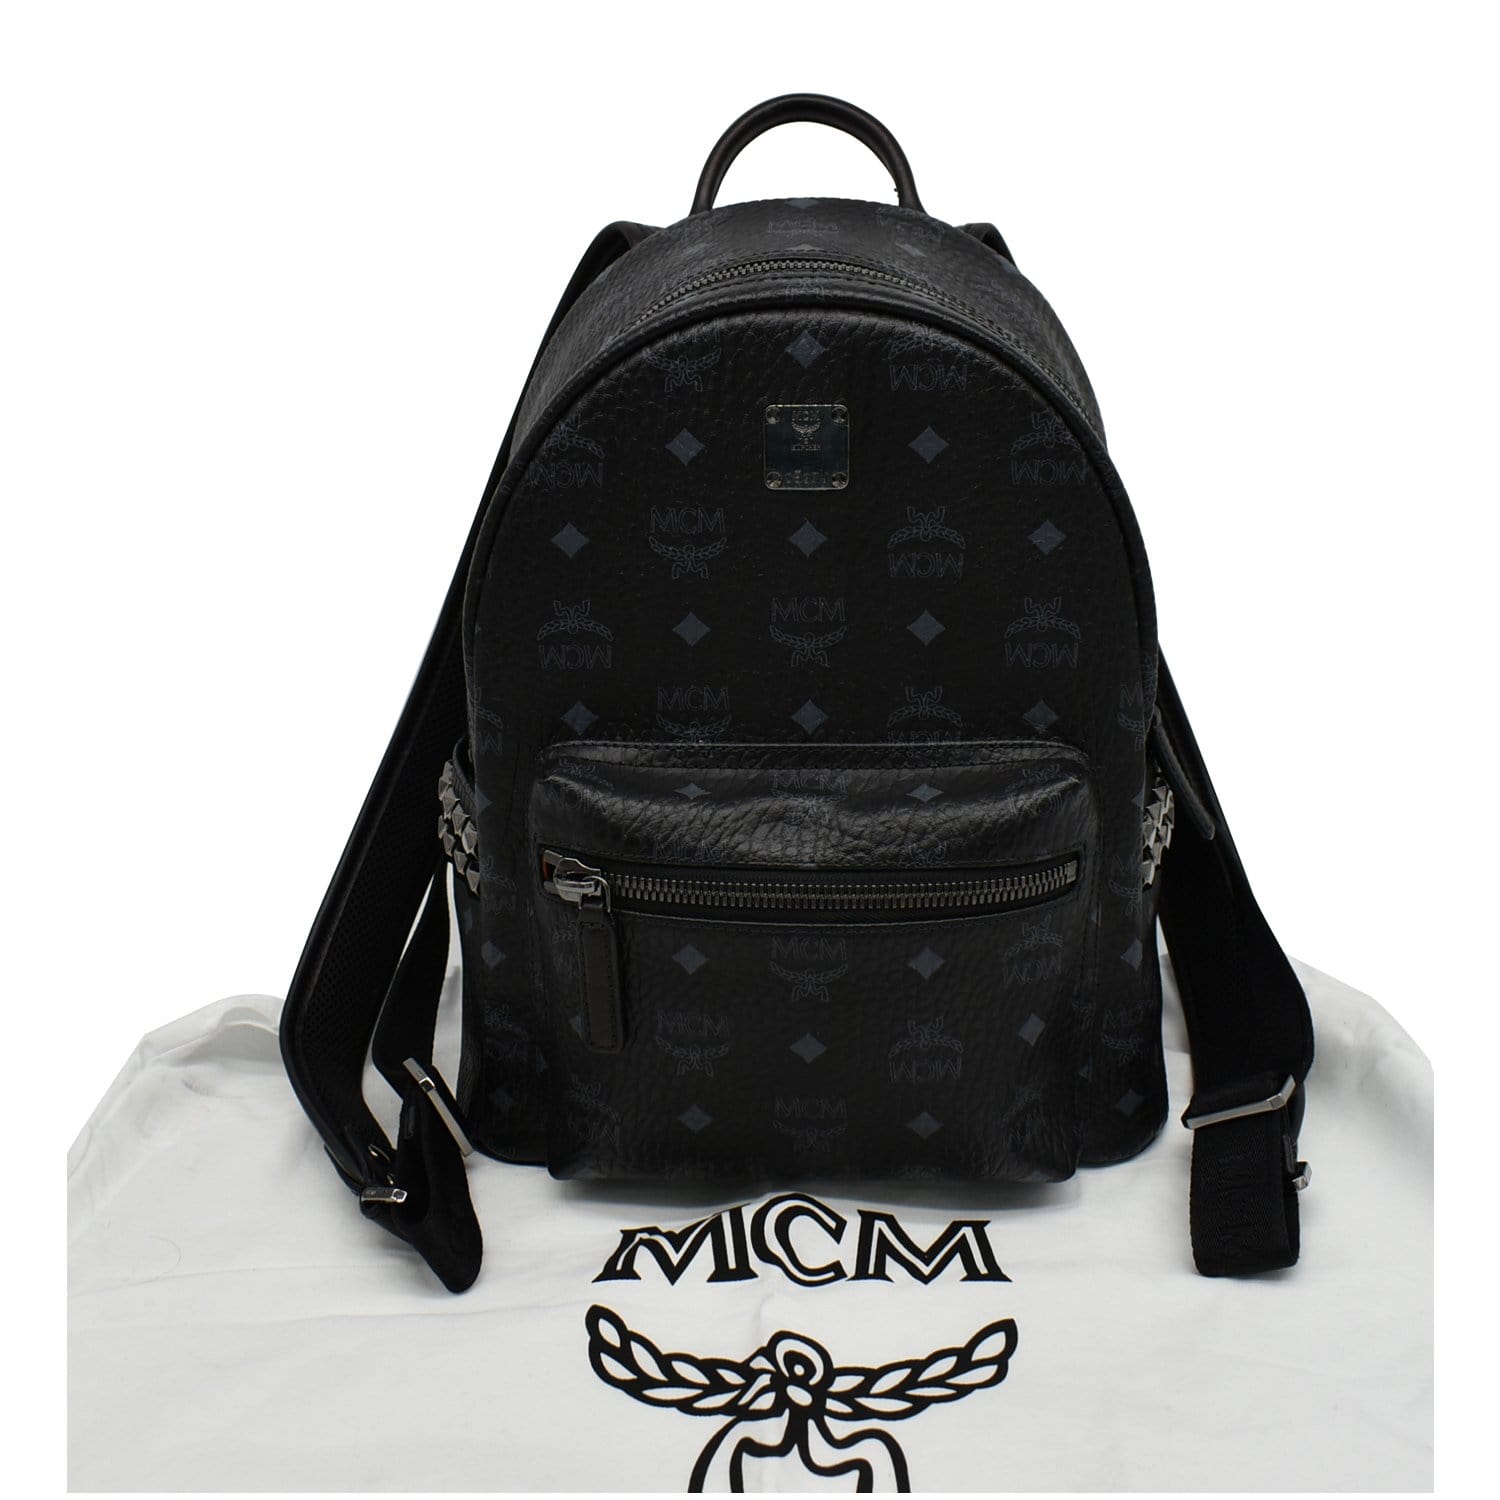 MCM BackPack  Mcm backpack, Mcm bags, Mcm bag backpacks